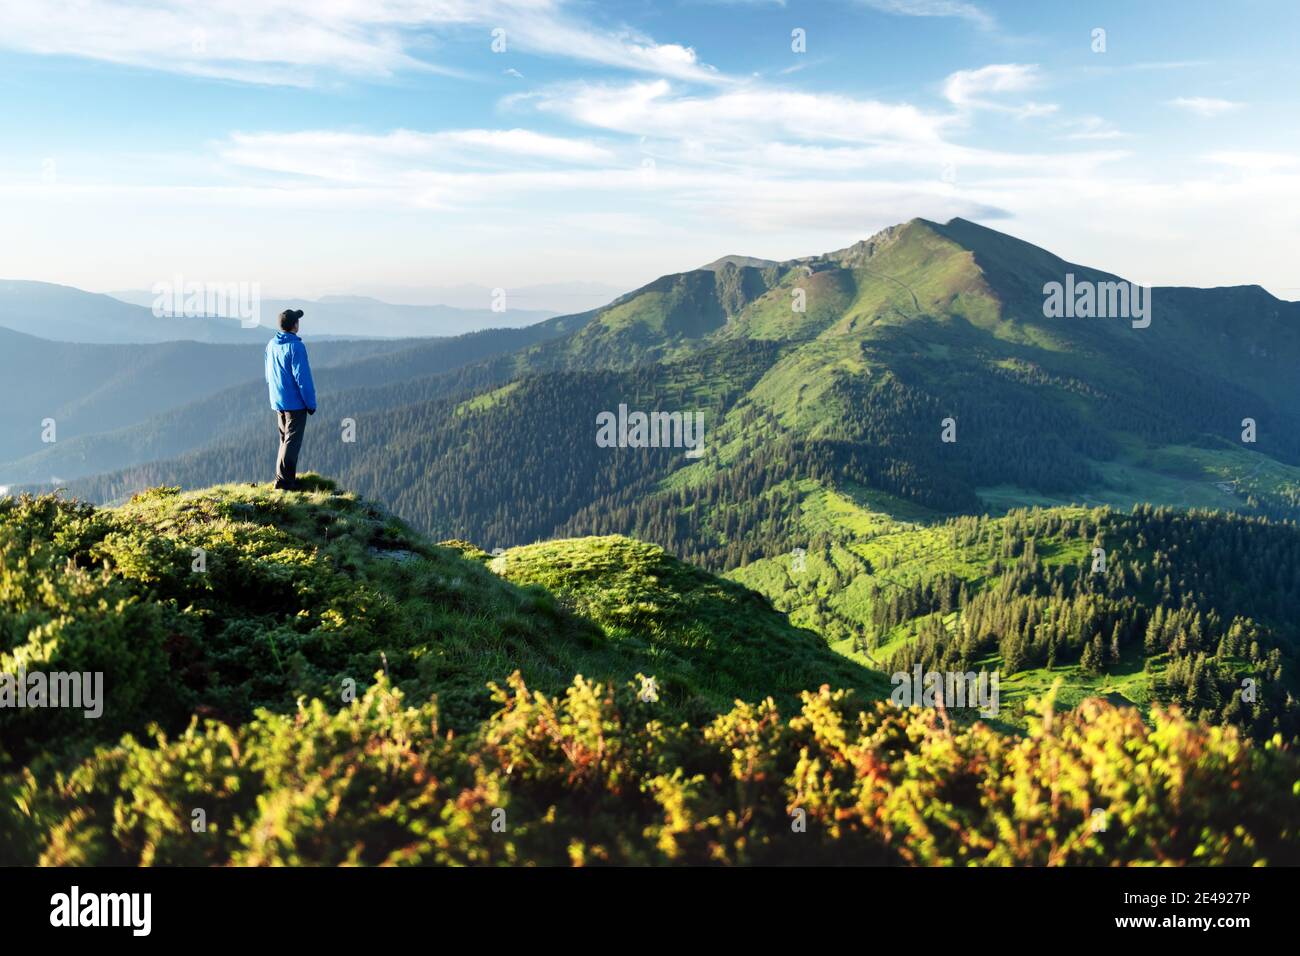 Ein Tourist am Rande eines Berges mit einem üppigen Gras bedeckt. Wolkiger blauer Himmel und hohe Berge Gipfel auf dem Hintergrund. Landschaftsfotografie Stockfoto